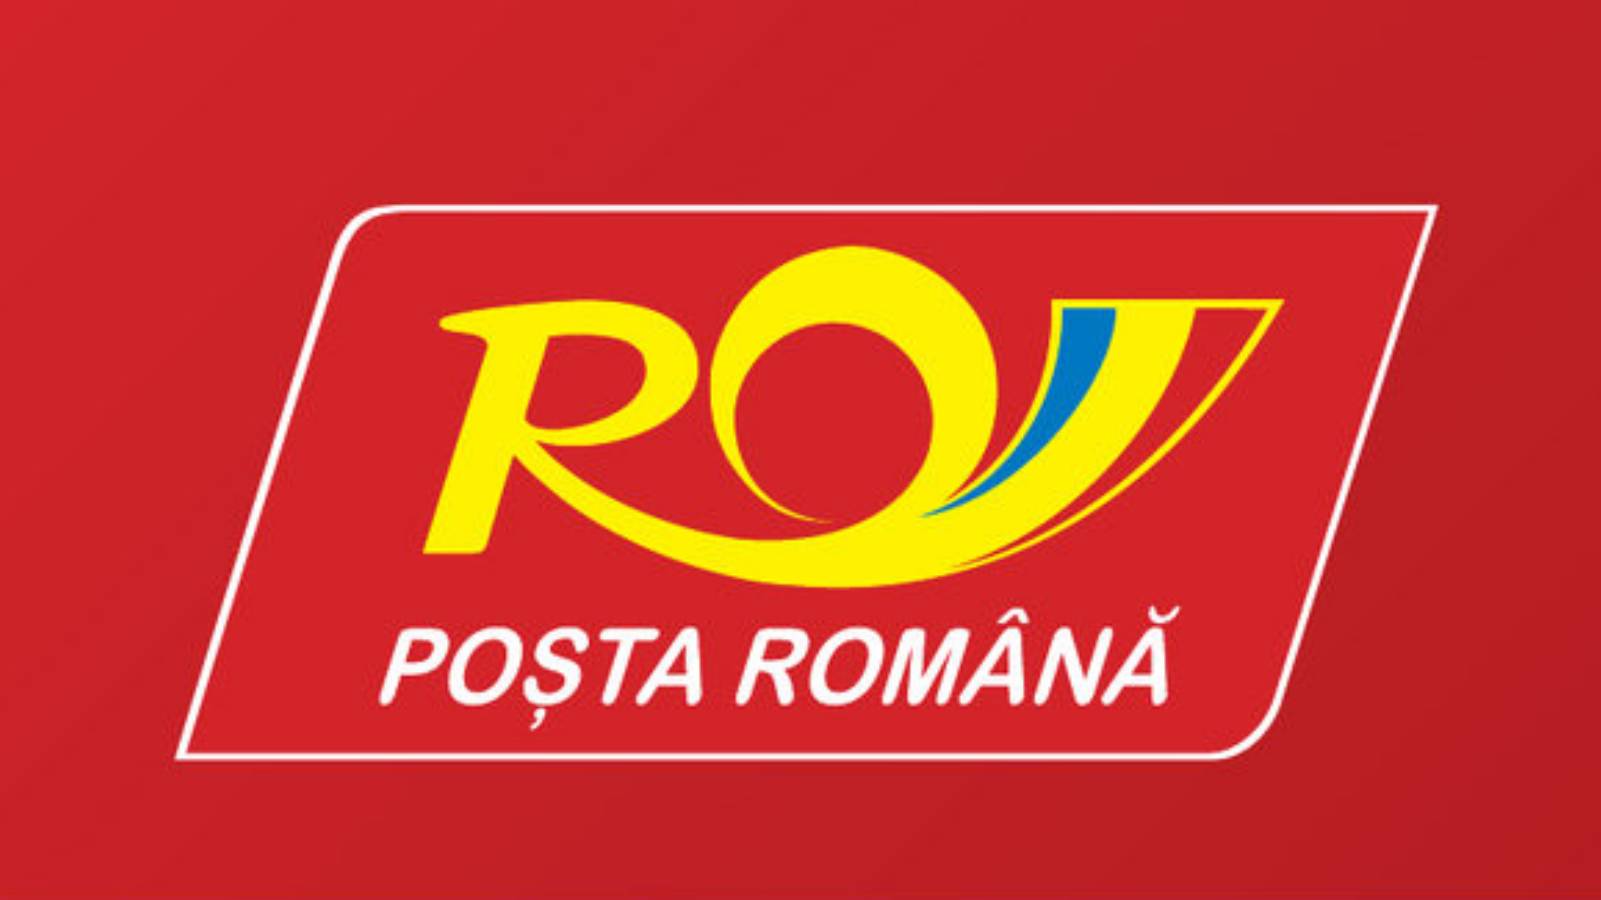 Romanian postikortti